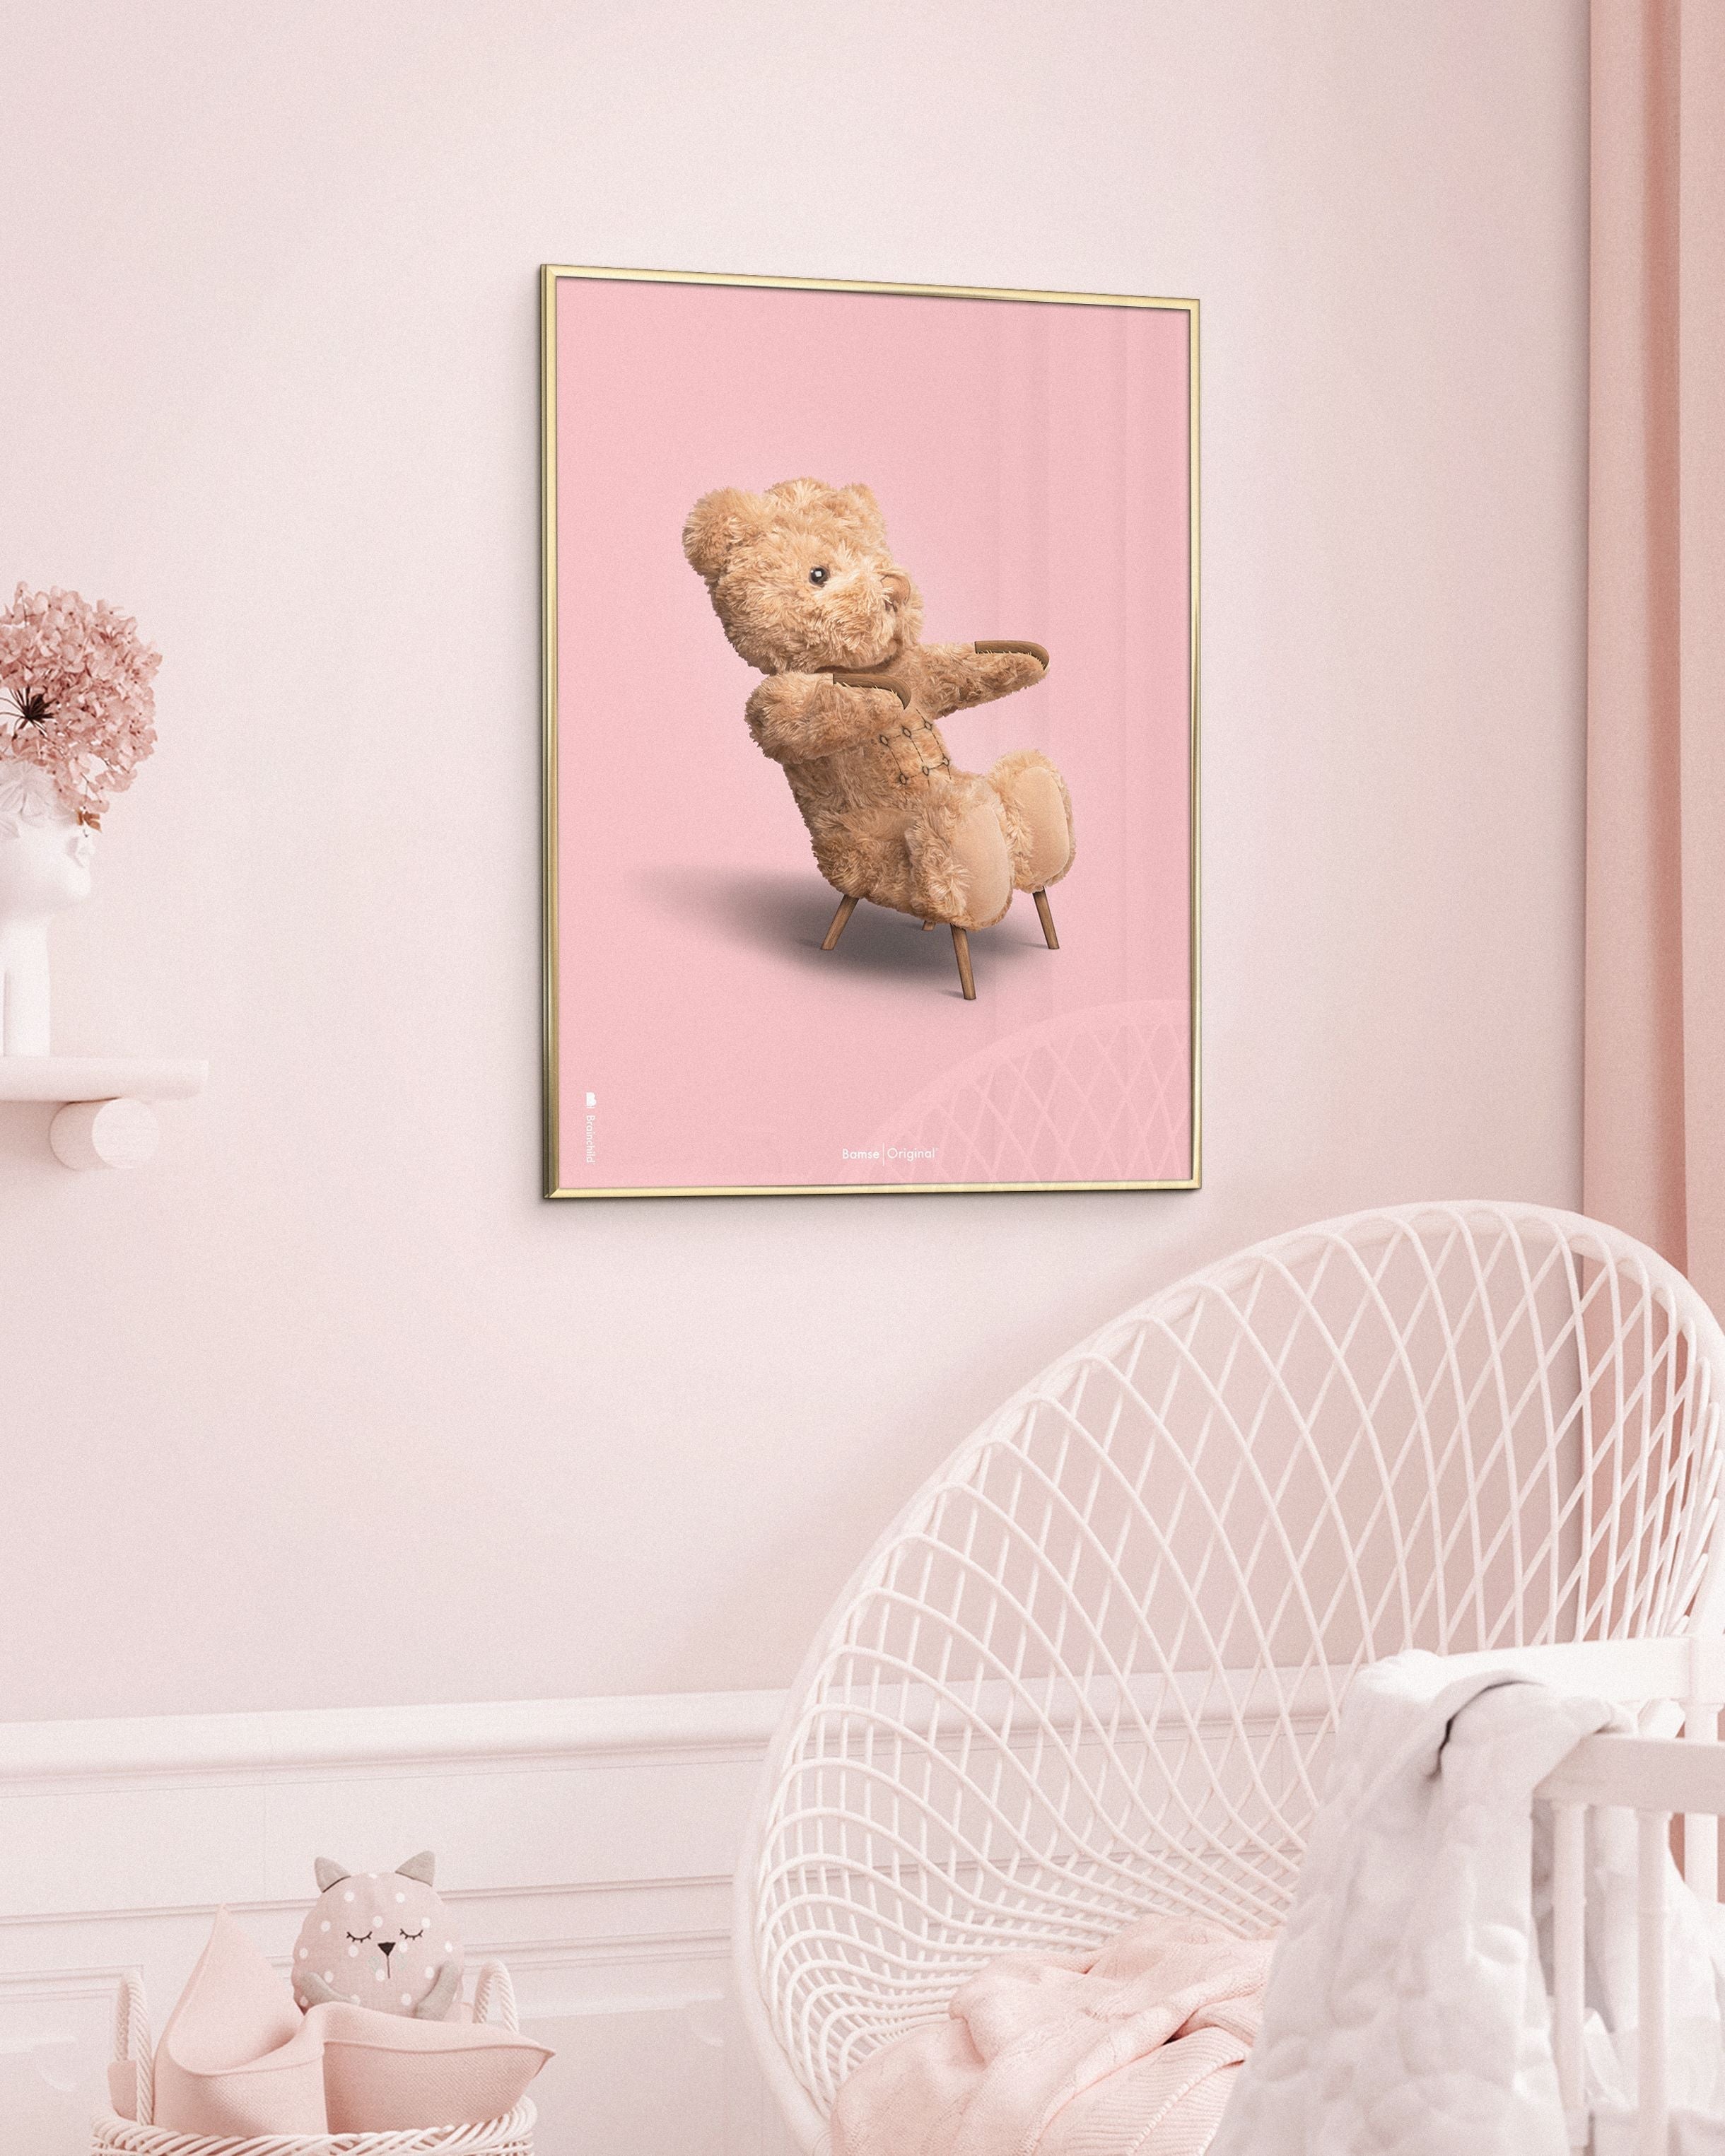 Brainchild Teddy Bear Classic plakát bez rámu 70x100 cm, růžové pozadí